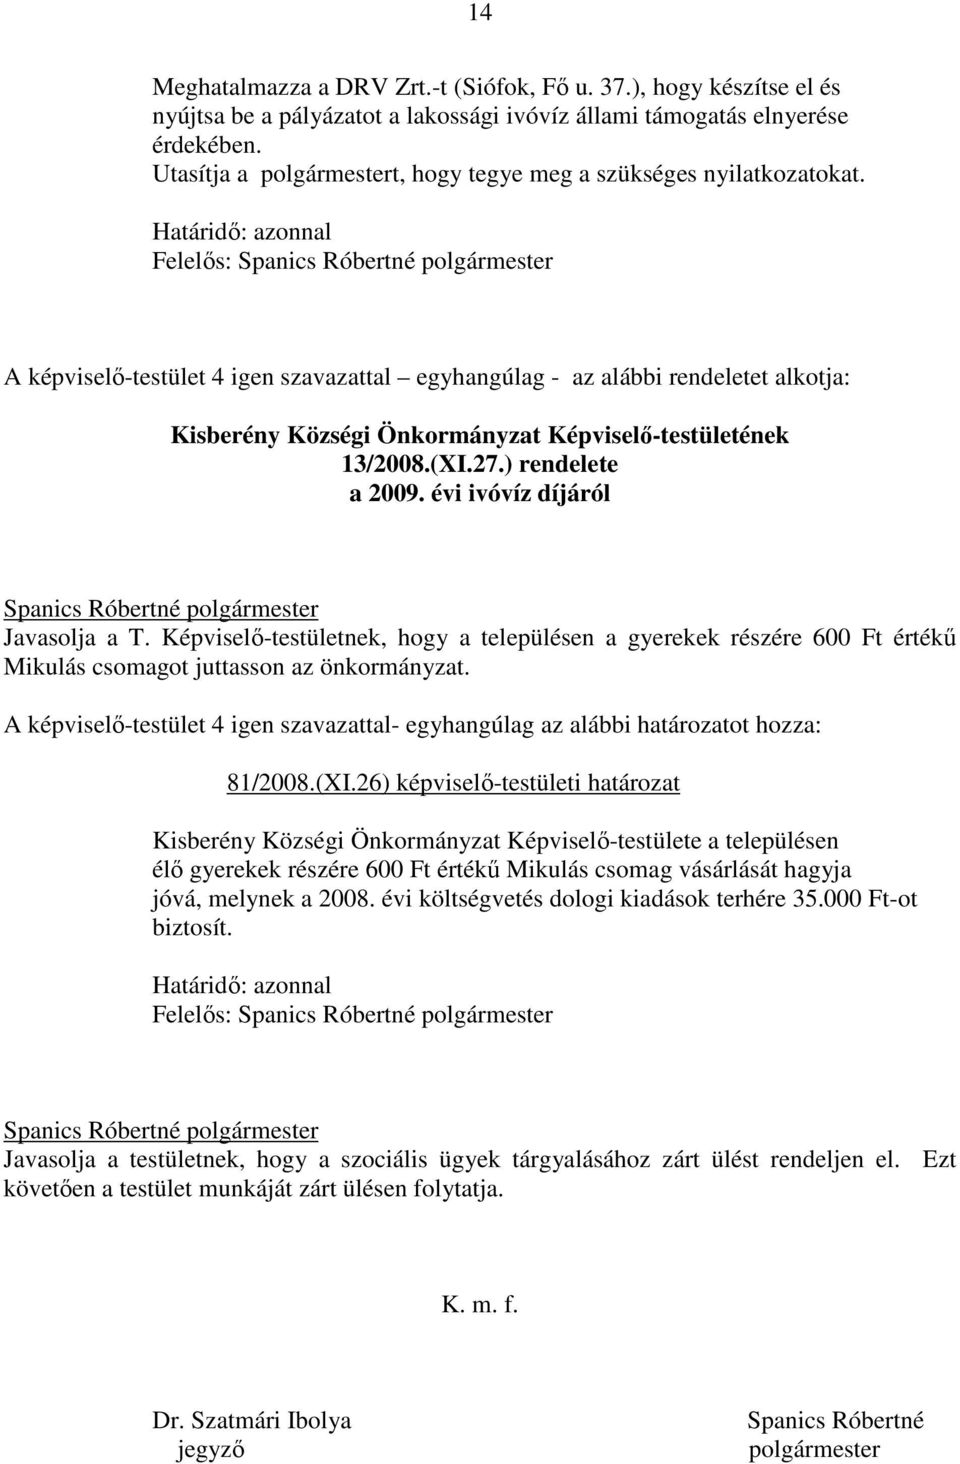 Határidı: azonnal Felelıs: A képviselı-testület 4 igen szavazattal egyhangúlag - az alábbi rendeletet alkotja: Kisberény Községi Önkormányzat Képviselı-testületének 13/2008.(XI.27.) rendelete a 2009.